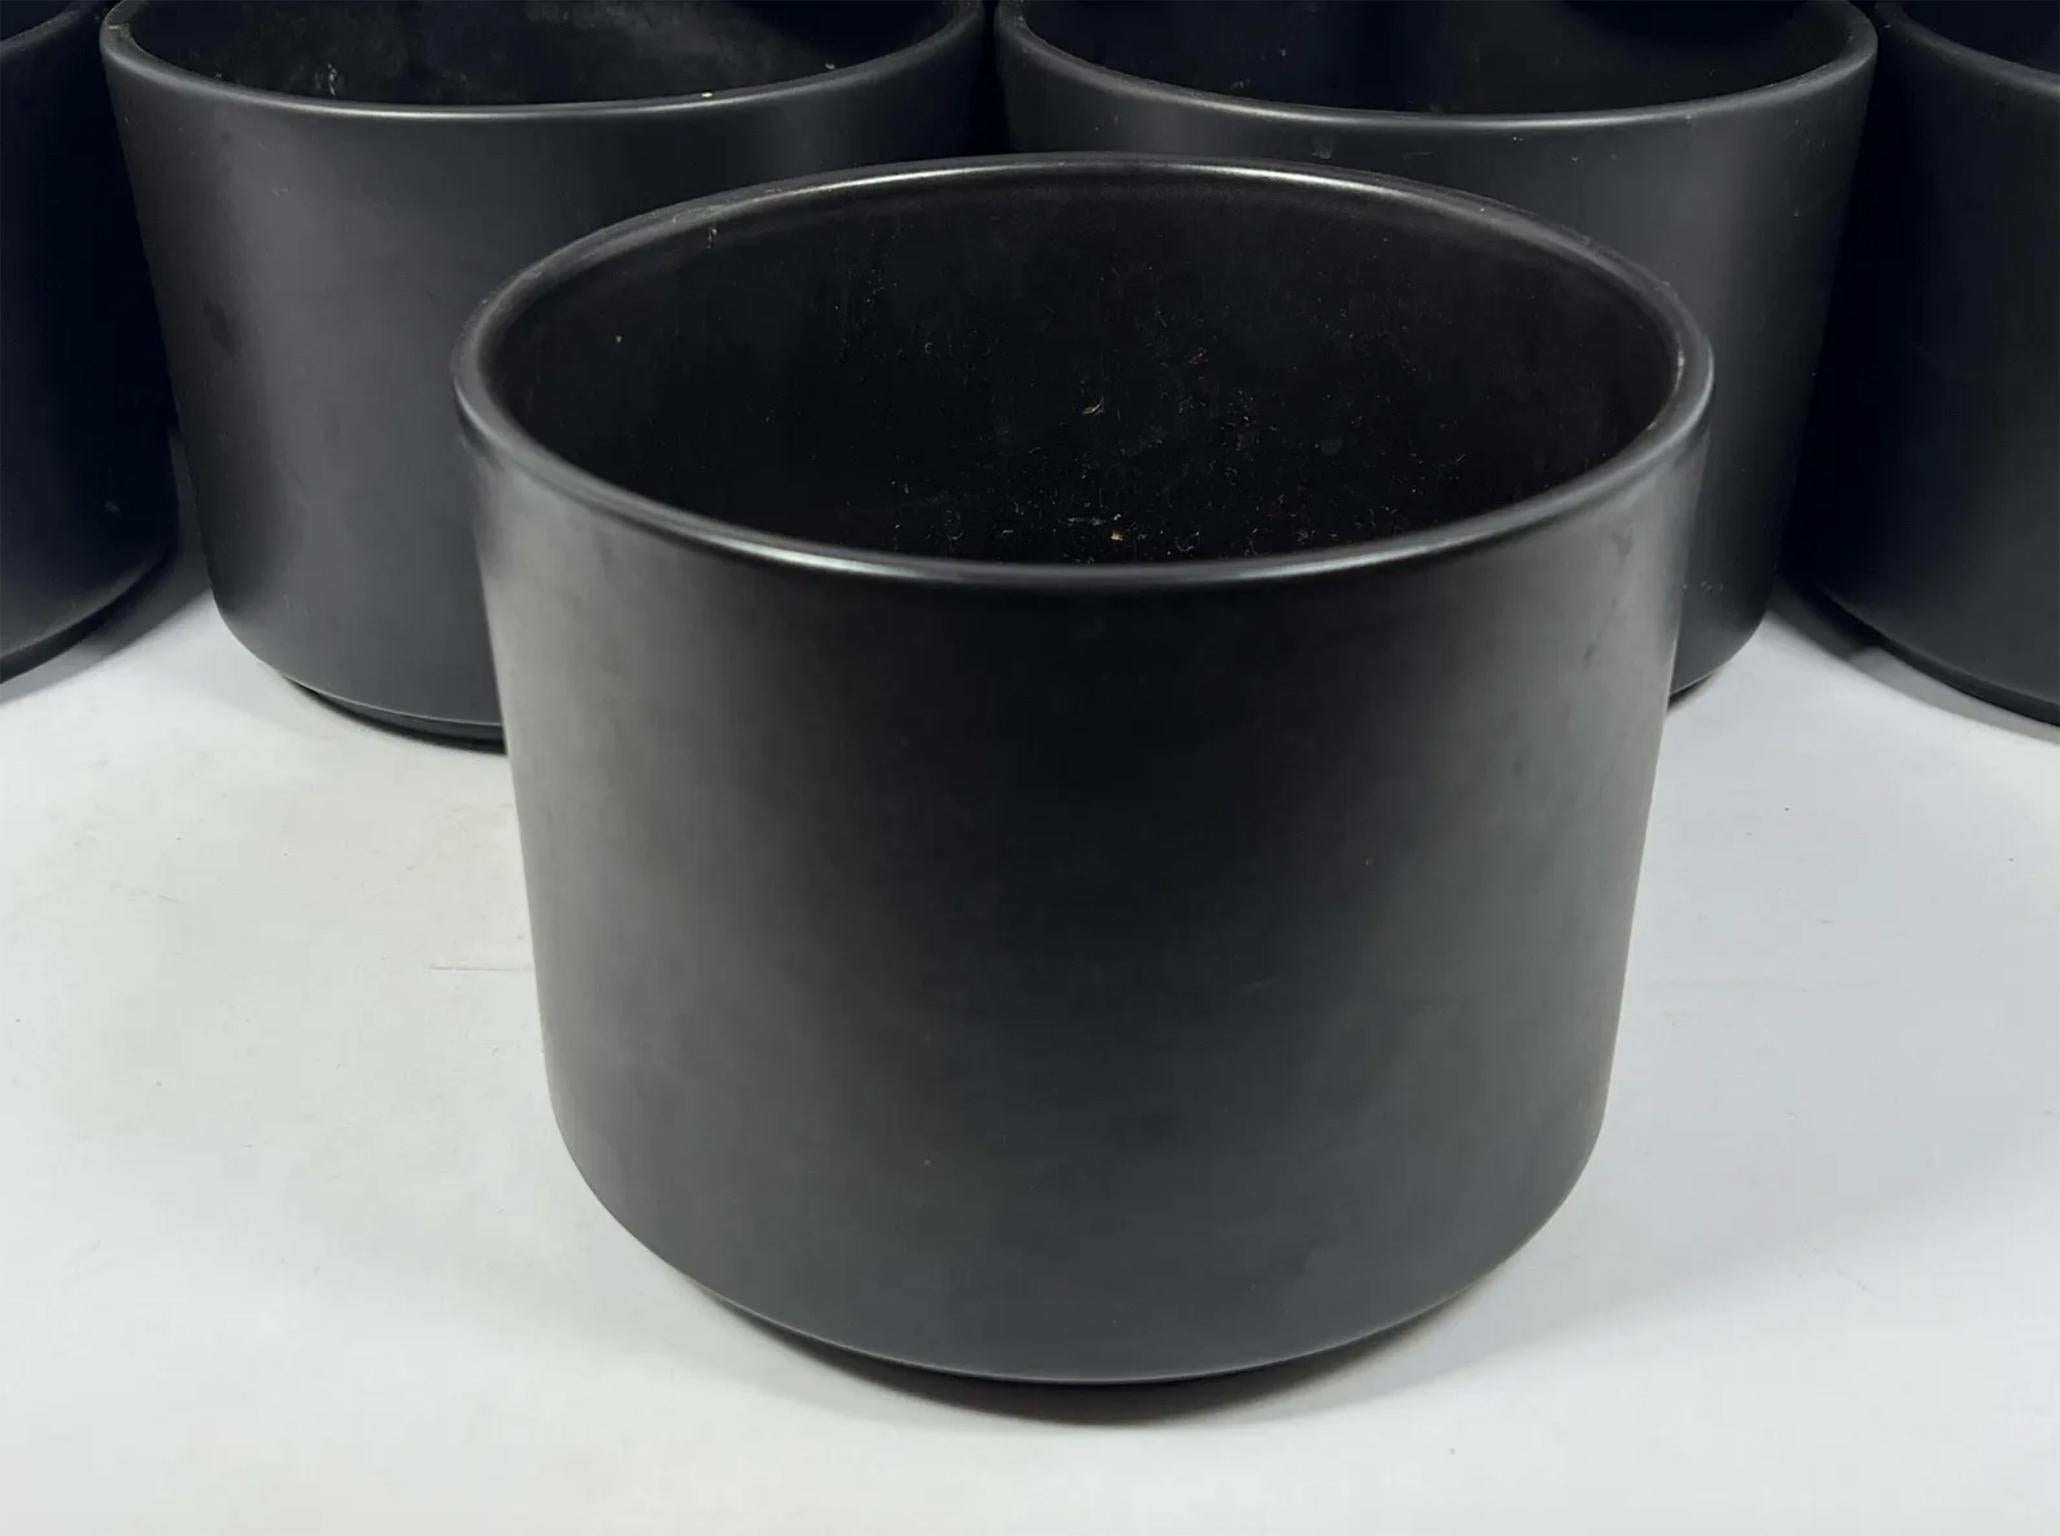 Mid-Century Modern Gainey Architectural Pottery Planters Pots dark Satin Black Glaze Ceramic Pottery circa 1960. La plupart d'entre elles sont étiquetées sur le fond. Fabriqué aux États-Unis, en Californie. Situé à New York. 

(14) Disponibles (Prix